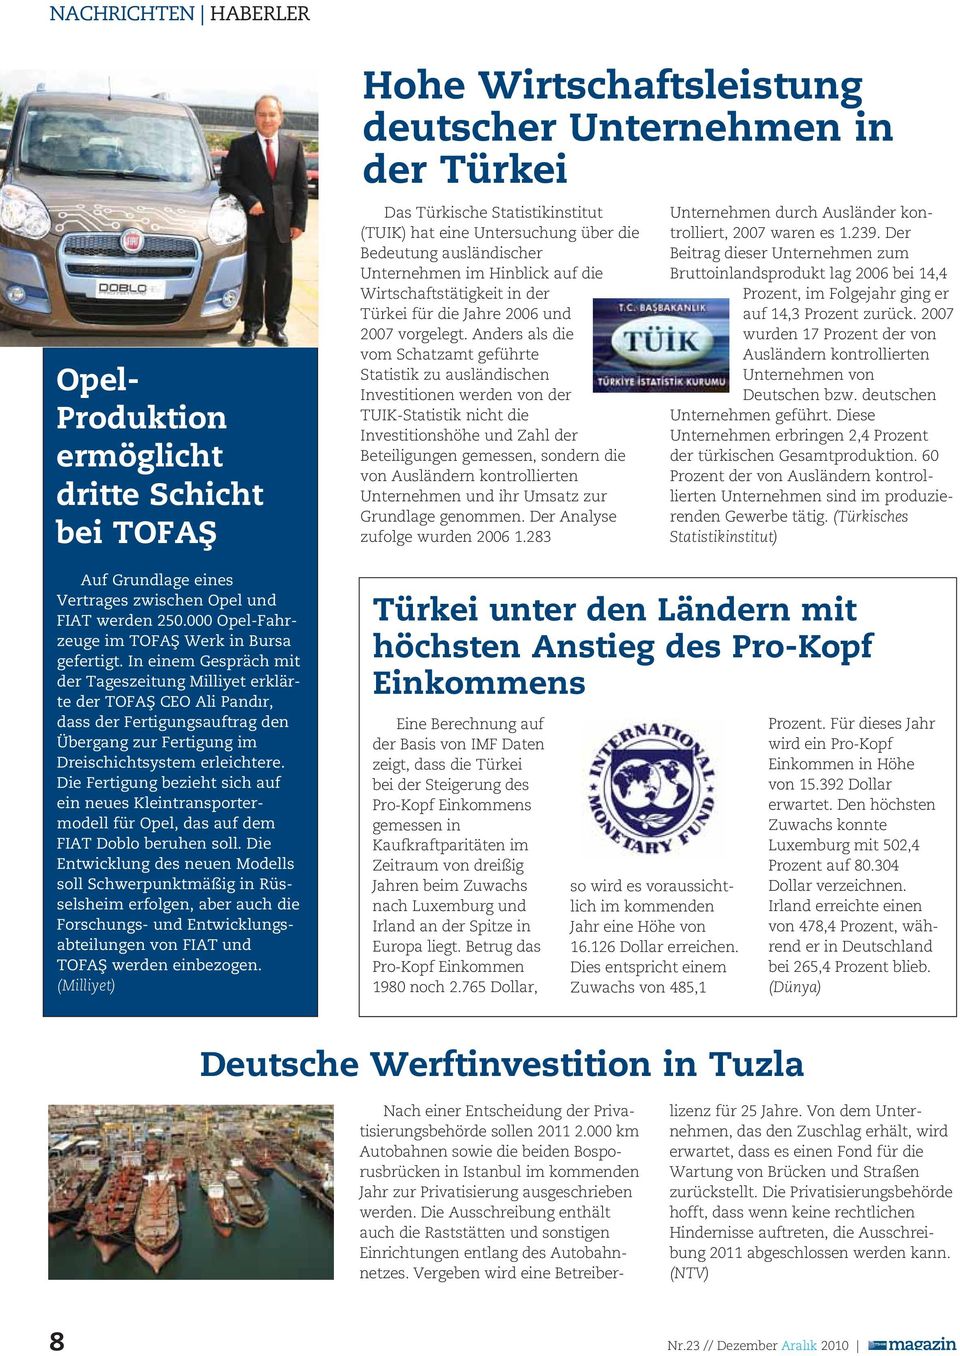 Die Fertigung bezieht sich auf ein neues Kleintransporter - modell für Opel, das auf dem FIAT Doblo beruhen soll.